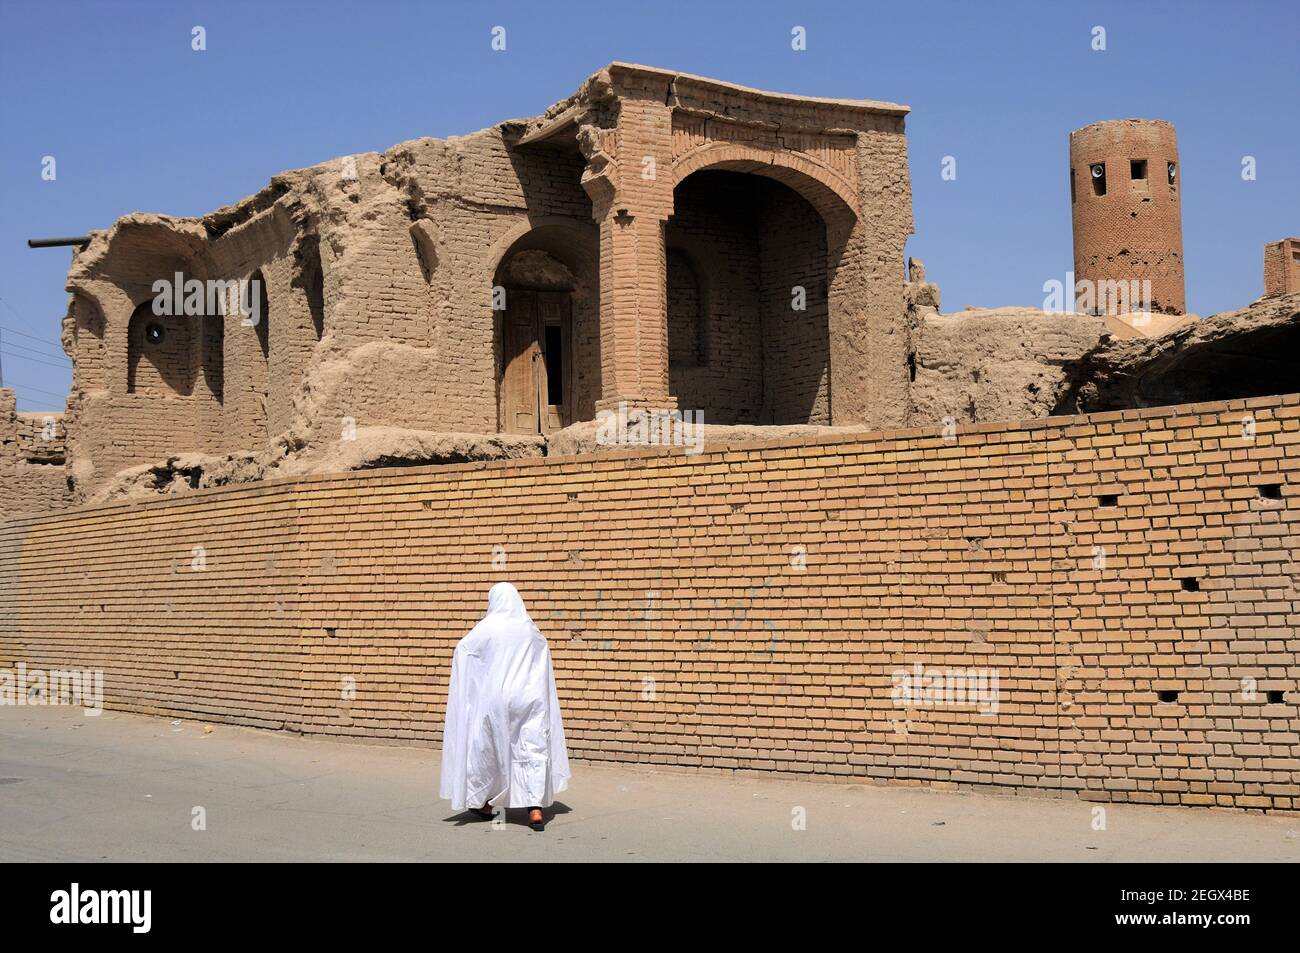 Maisons traditionnelles iraniennes. Une iranienne portant une robe blanche. Une ville médiévale en Iran. Barzaneh, Khorasan du Nord, Iran. Banque D'Images